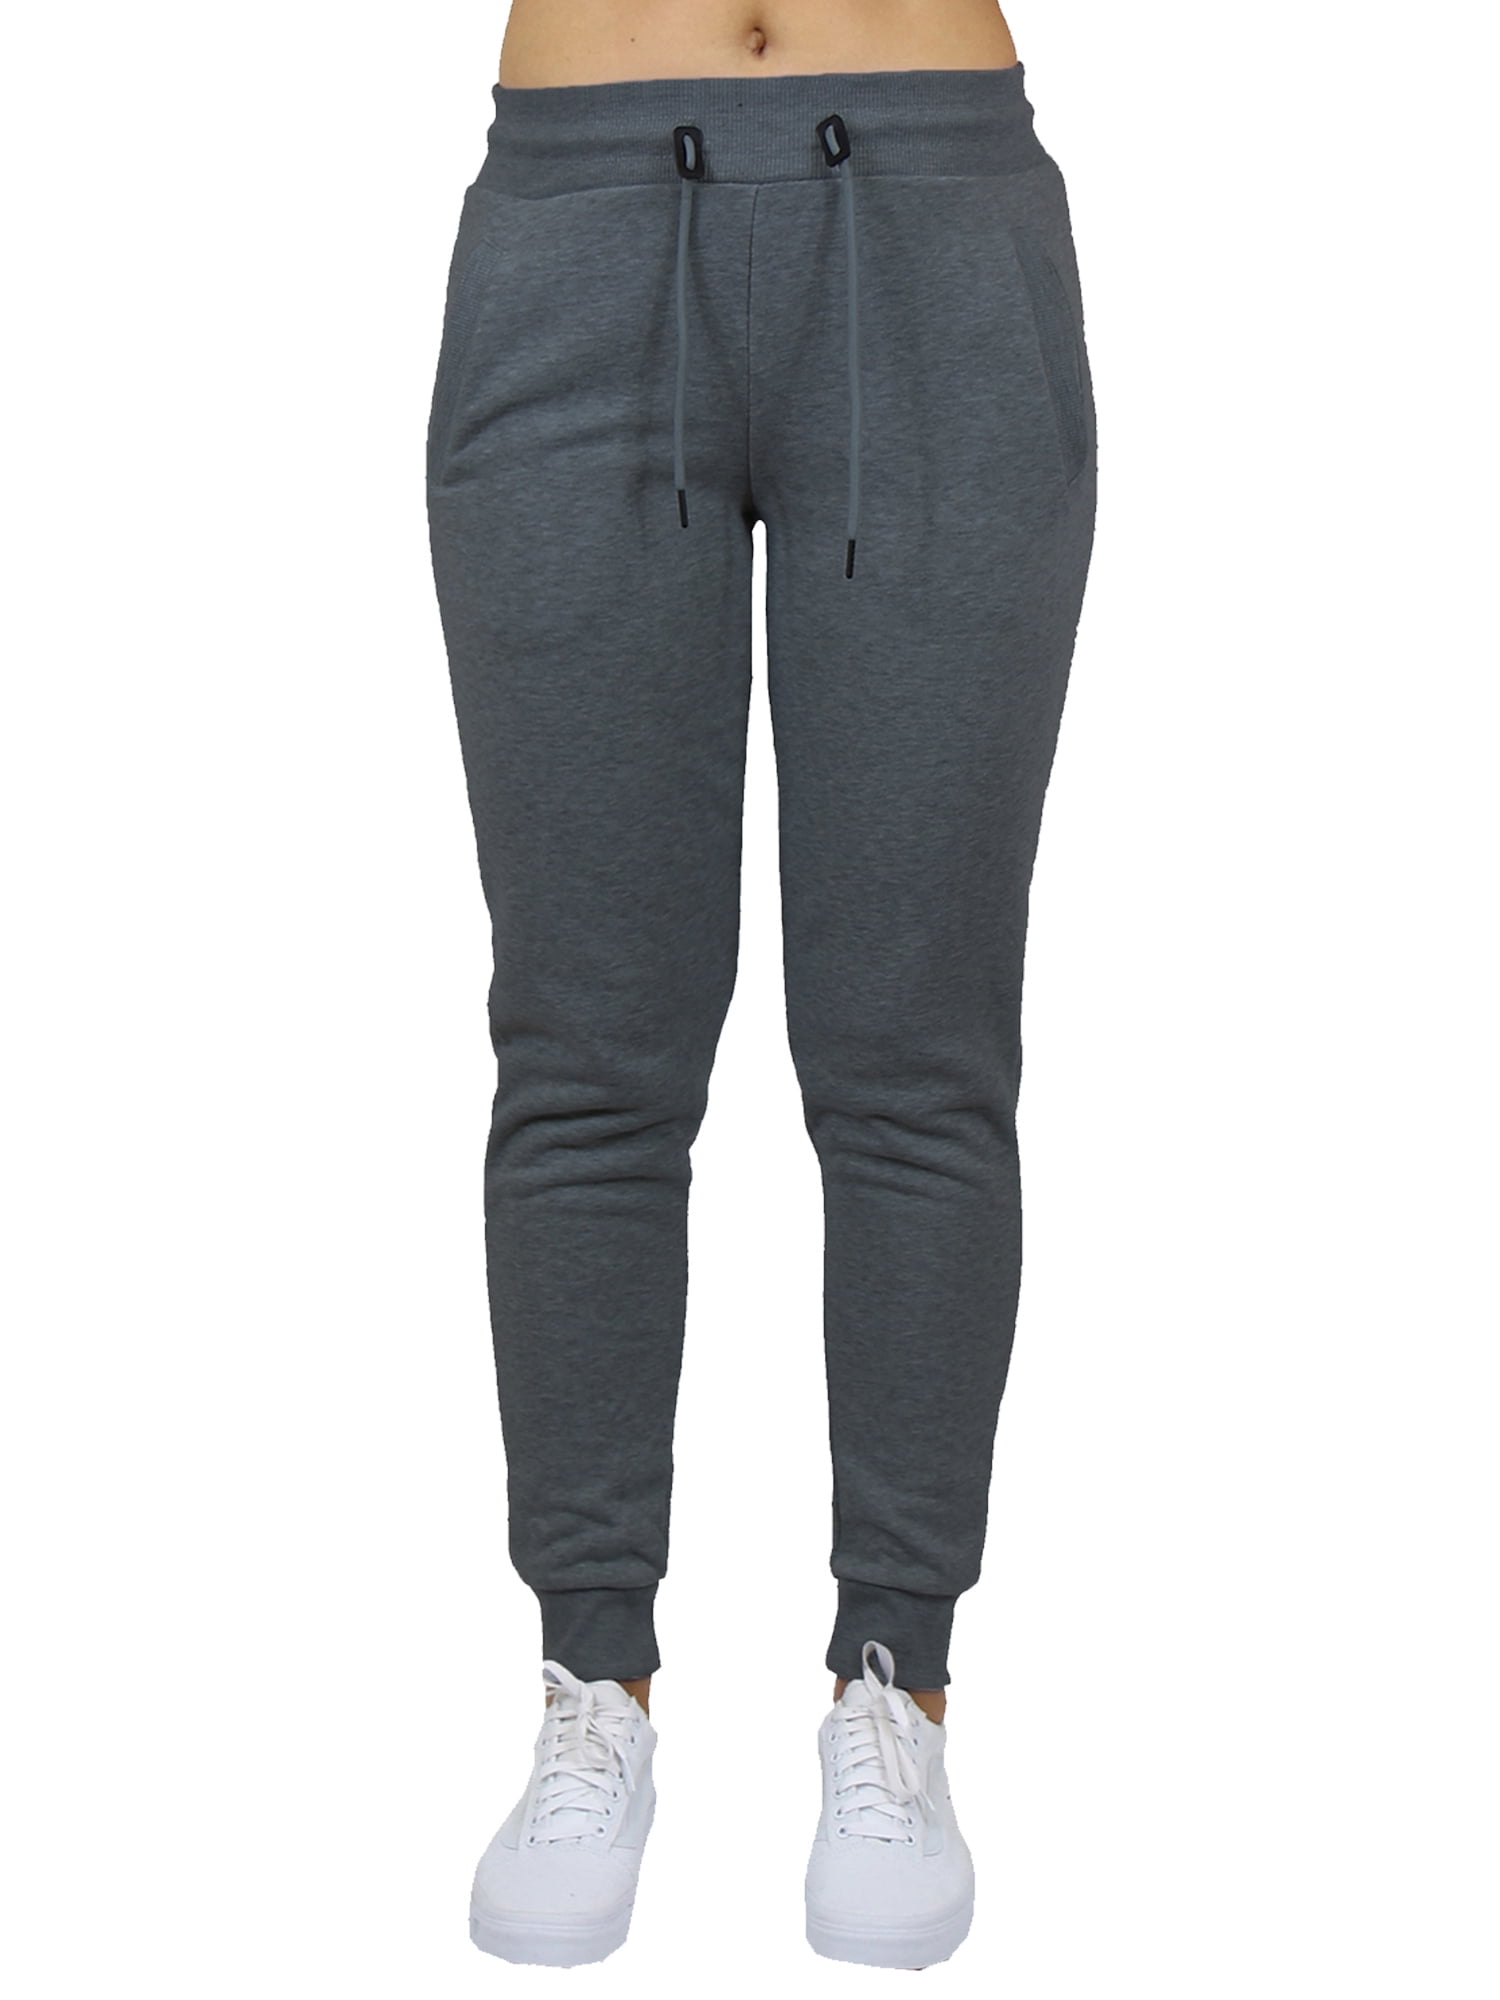 Womens Fleece Jogger Sweatpants - SLIM FIT - Walmart.com